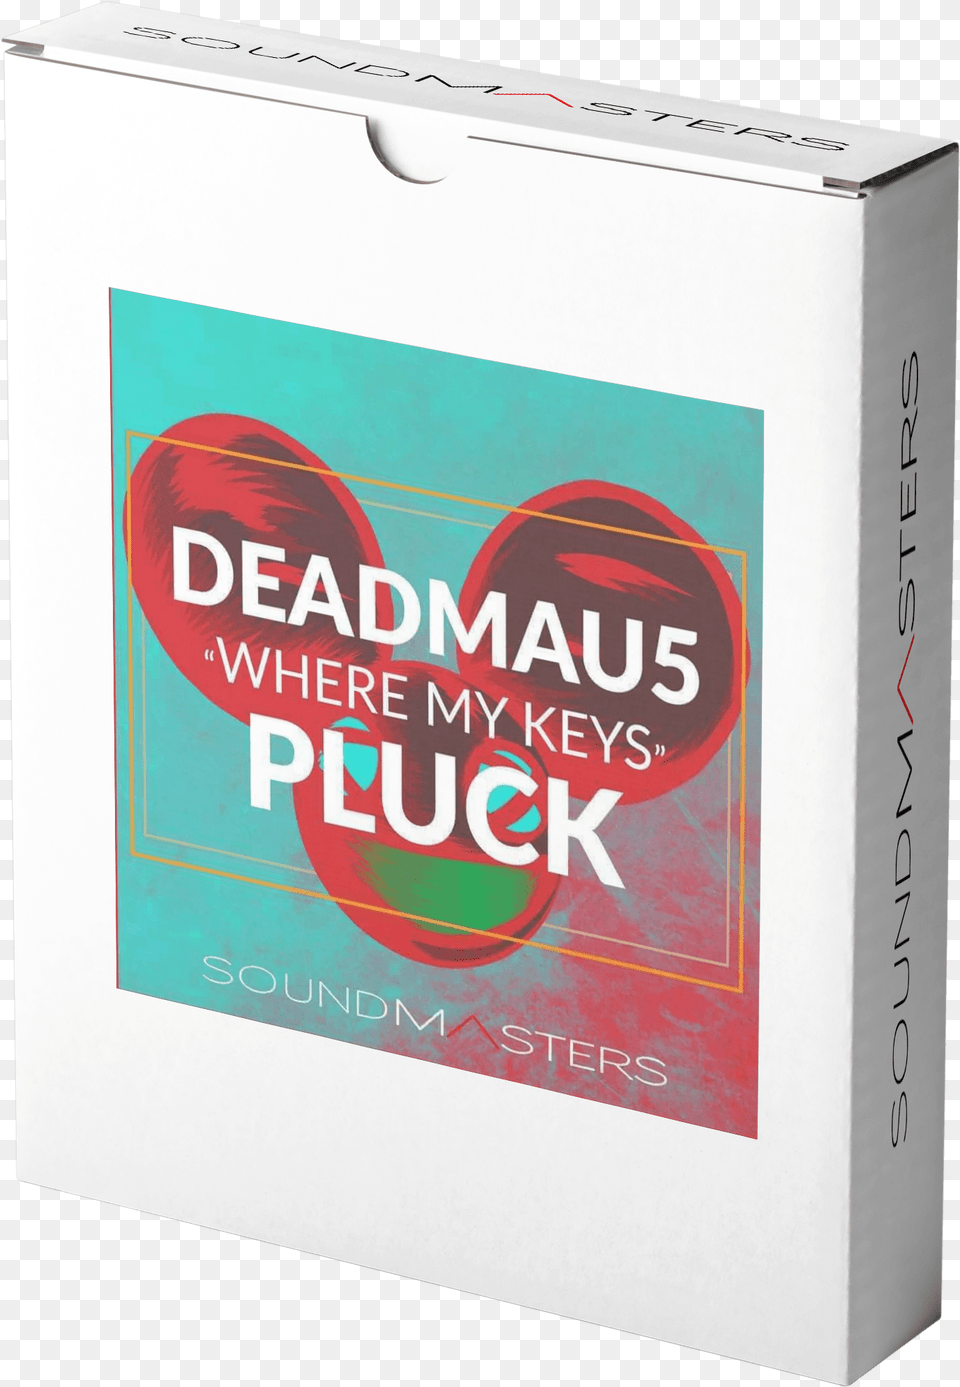 Deadmau5 Box, Book, Publication, Business Card, Paper Free Transparent Png